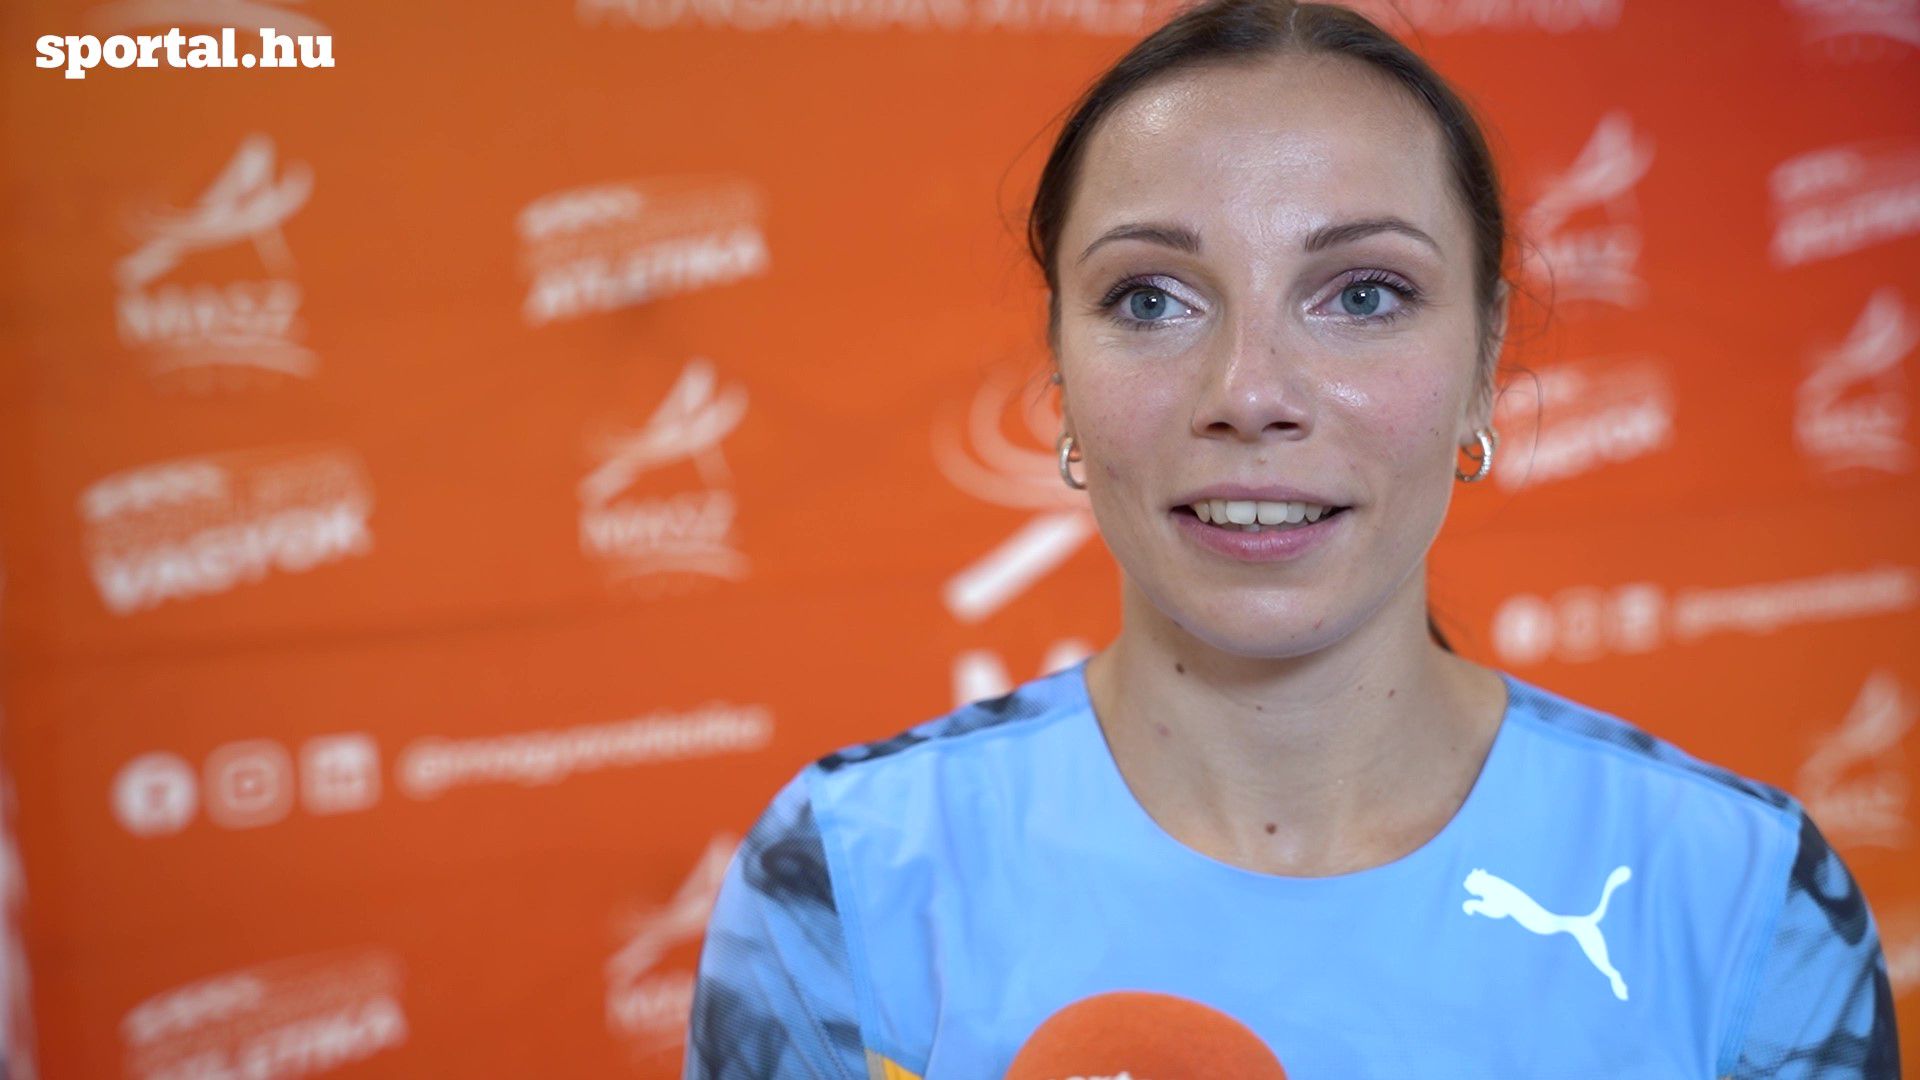 Kozák Luca az olimpiai szintről: „a pálya és én is elég gyors vagyok hozzá!” – videóval